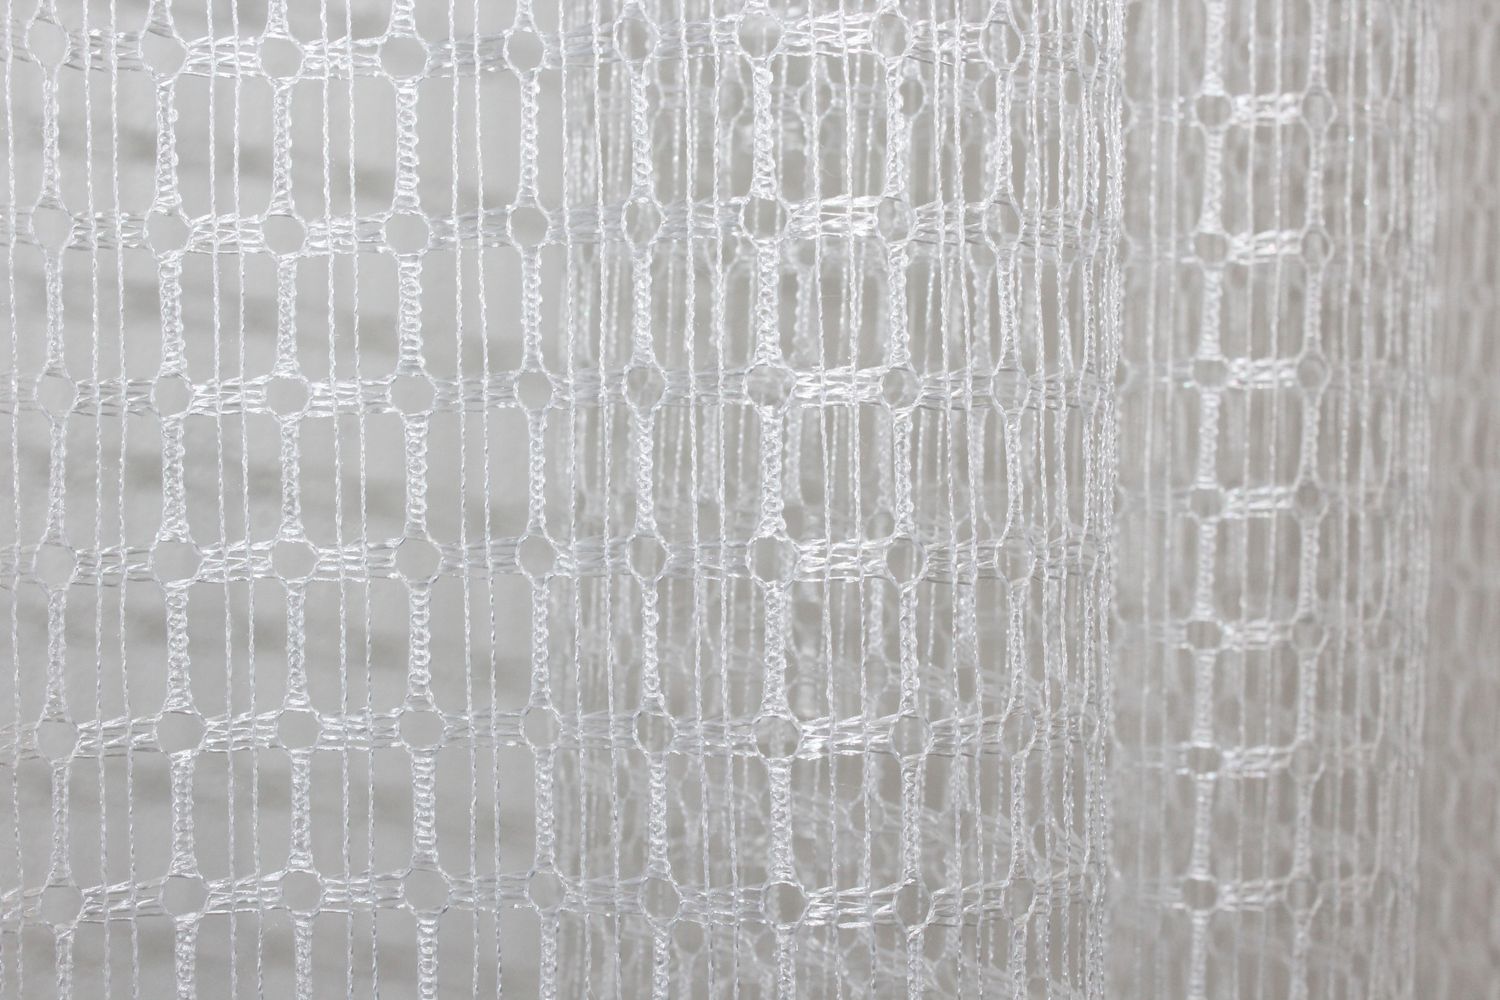 Арка (290х170см) сетка из макраме На кухню, балкон цвет белый с золотисто-кремовым 000к 51-116